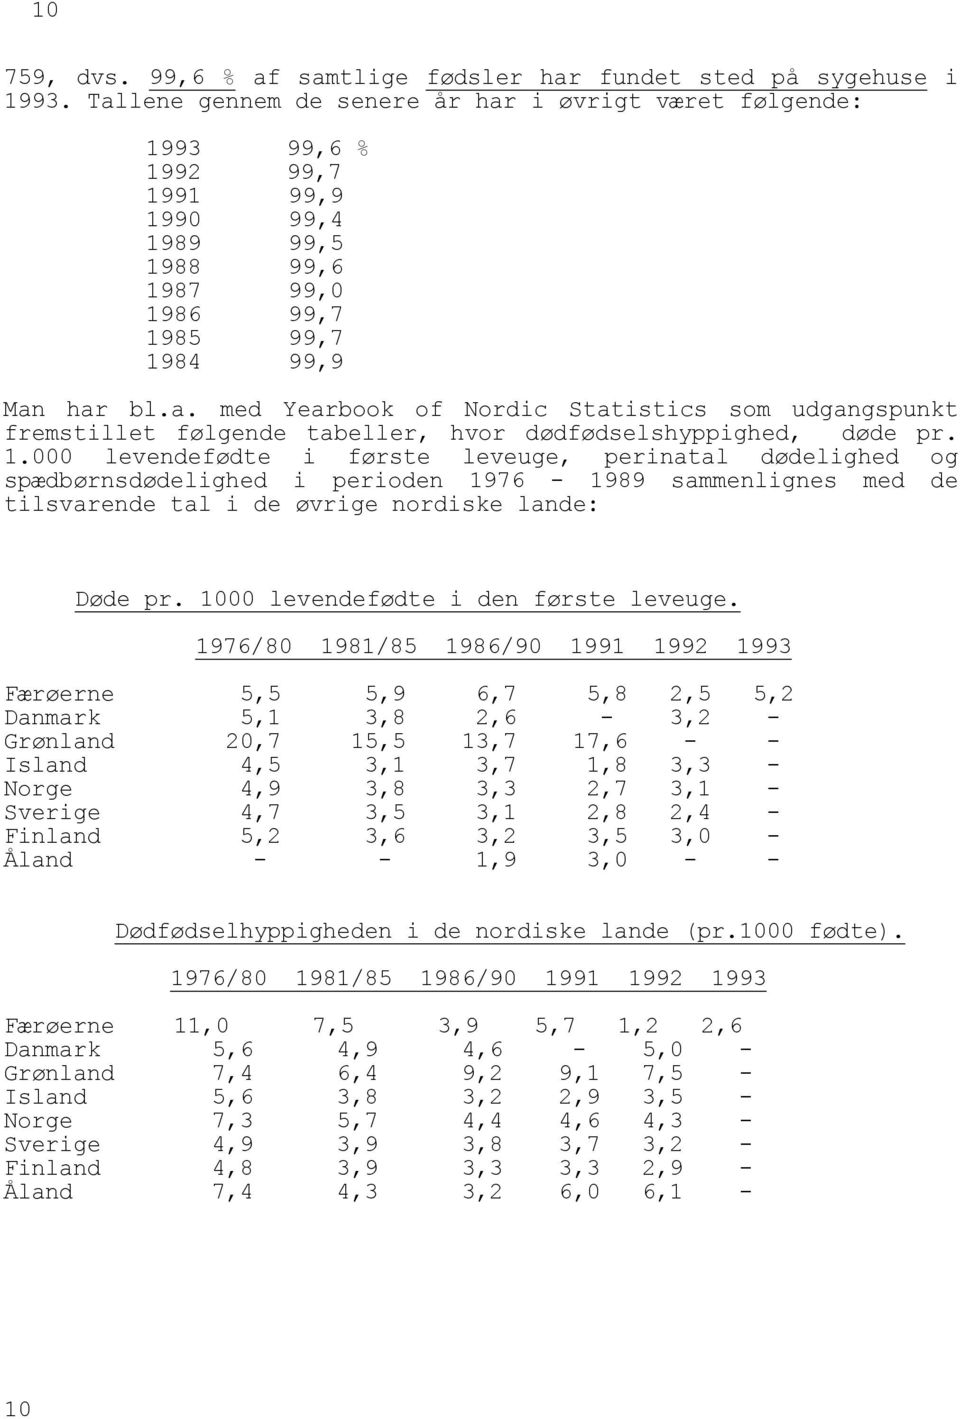 1.000 levendefødte i første leveuge, perinatal dødelighed og spædbørnsdødelighed i perioden 1976-1989 sammenlignes med de tilsvarende tal i de øvrige nordiske lande: Døde pr.